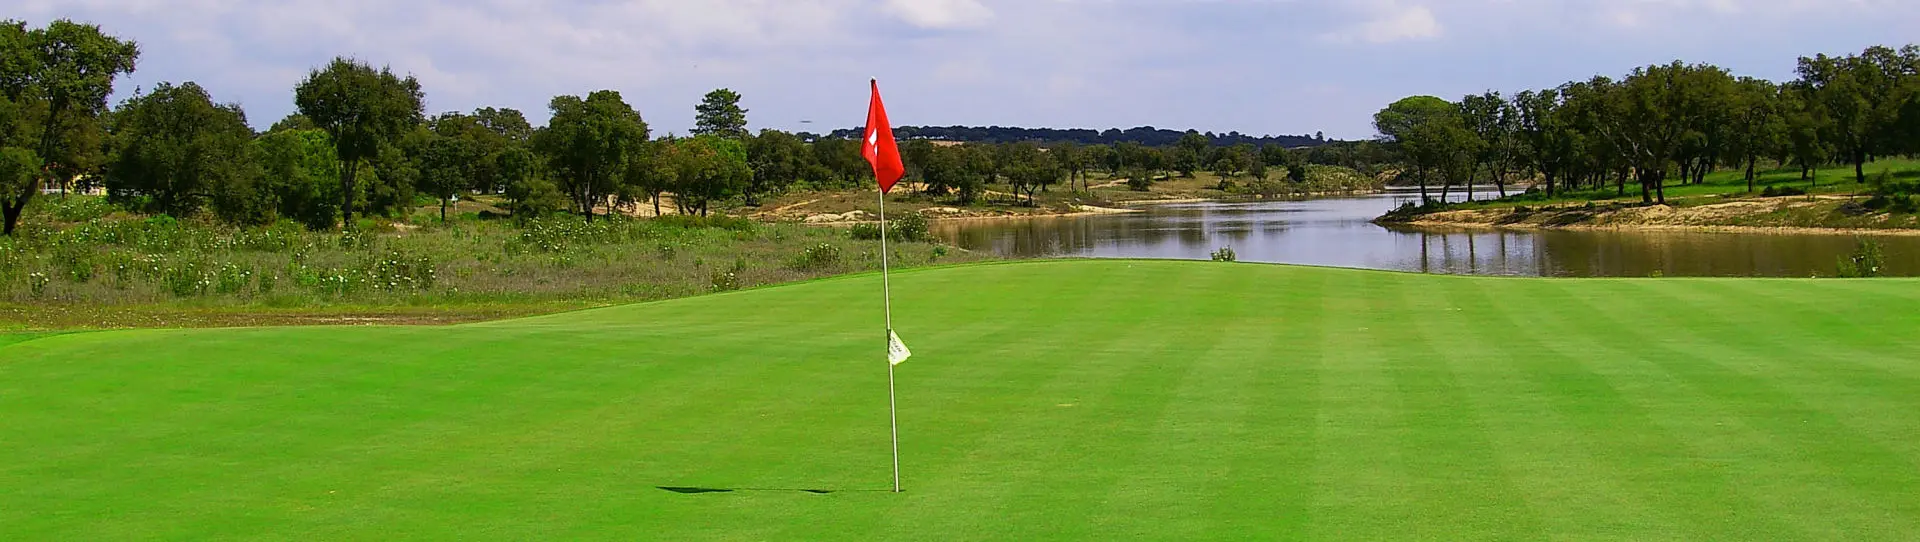 Portugal golf courses - Santo Estêvão - Photo 3